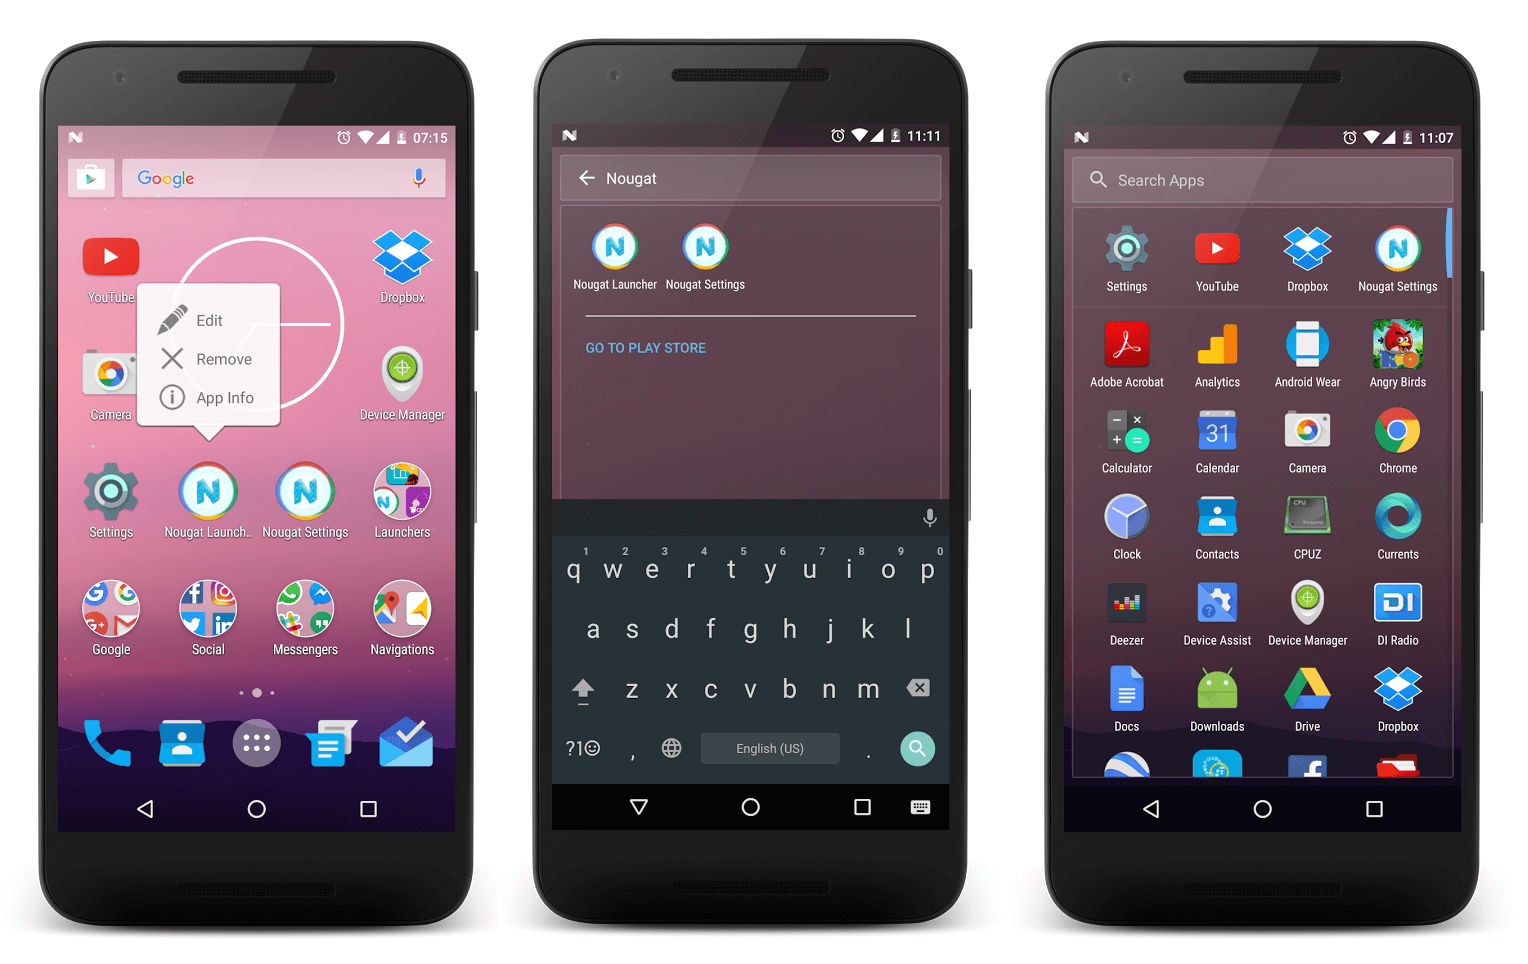 android 7.0 nougat wallpaper,mobiltelefon,gadget,kommunikationsgerät,tragbares kommunikationsgerät,smartphone